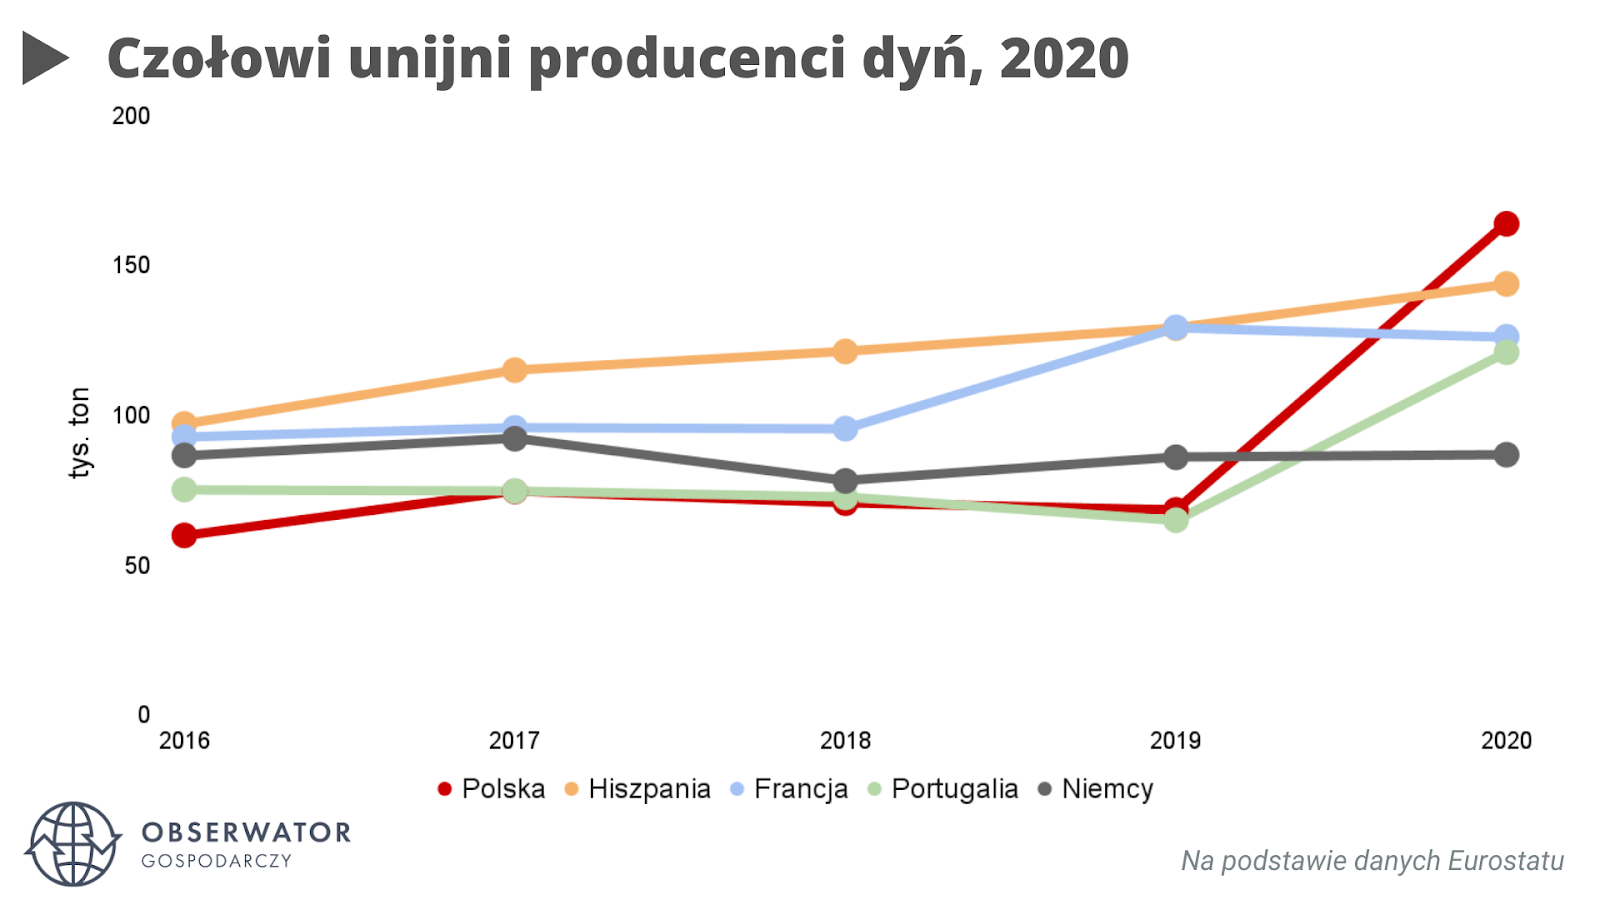 Czołowi unijni producenci dyń, 2016-2020